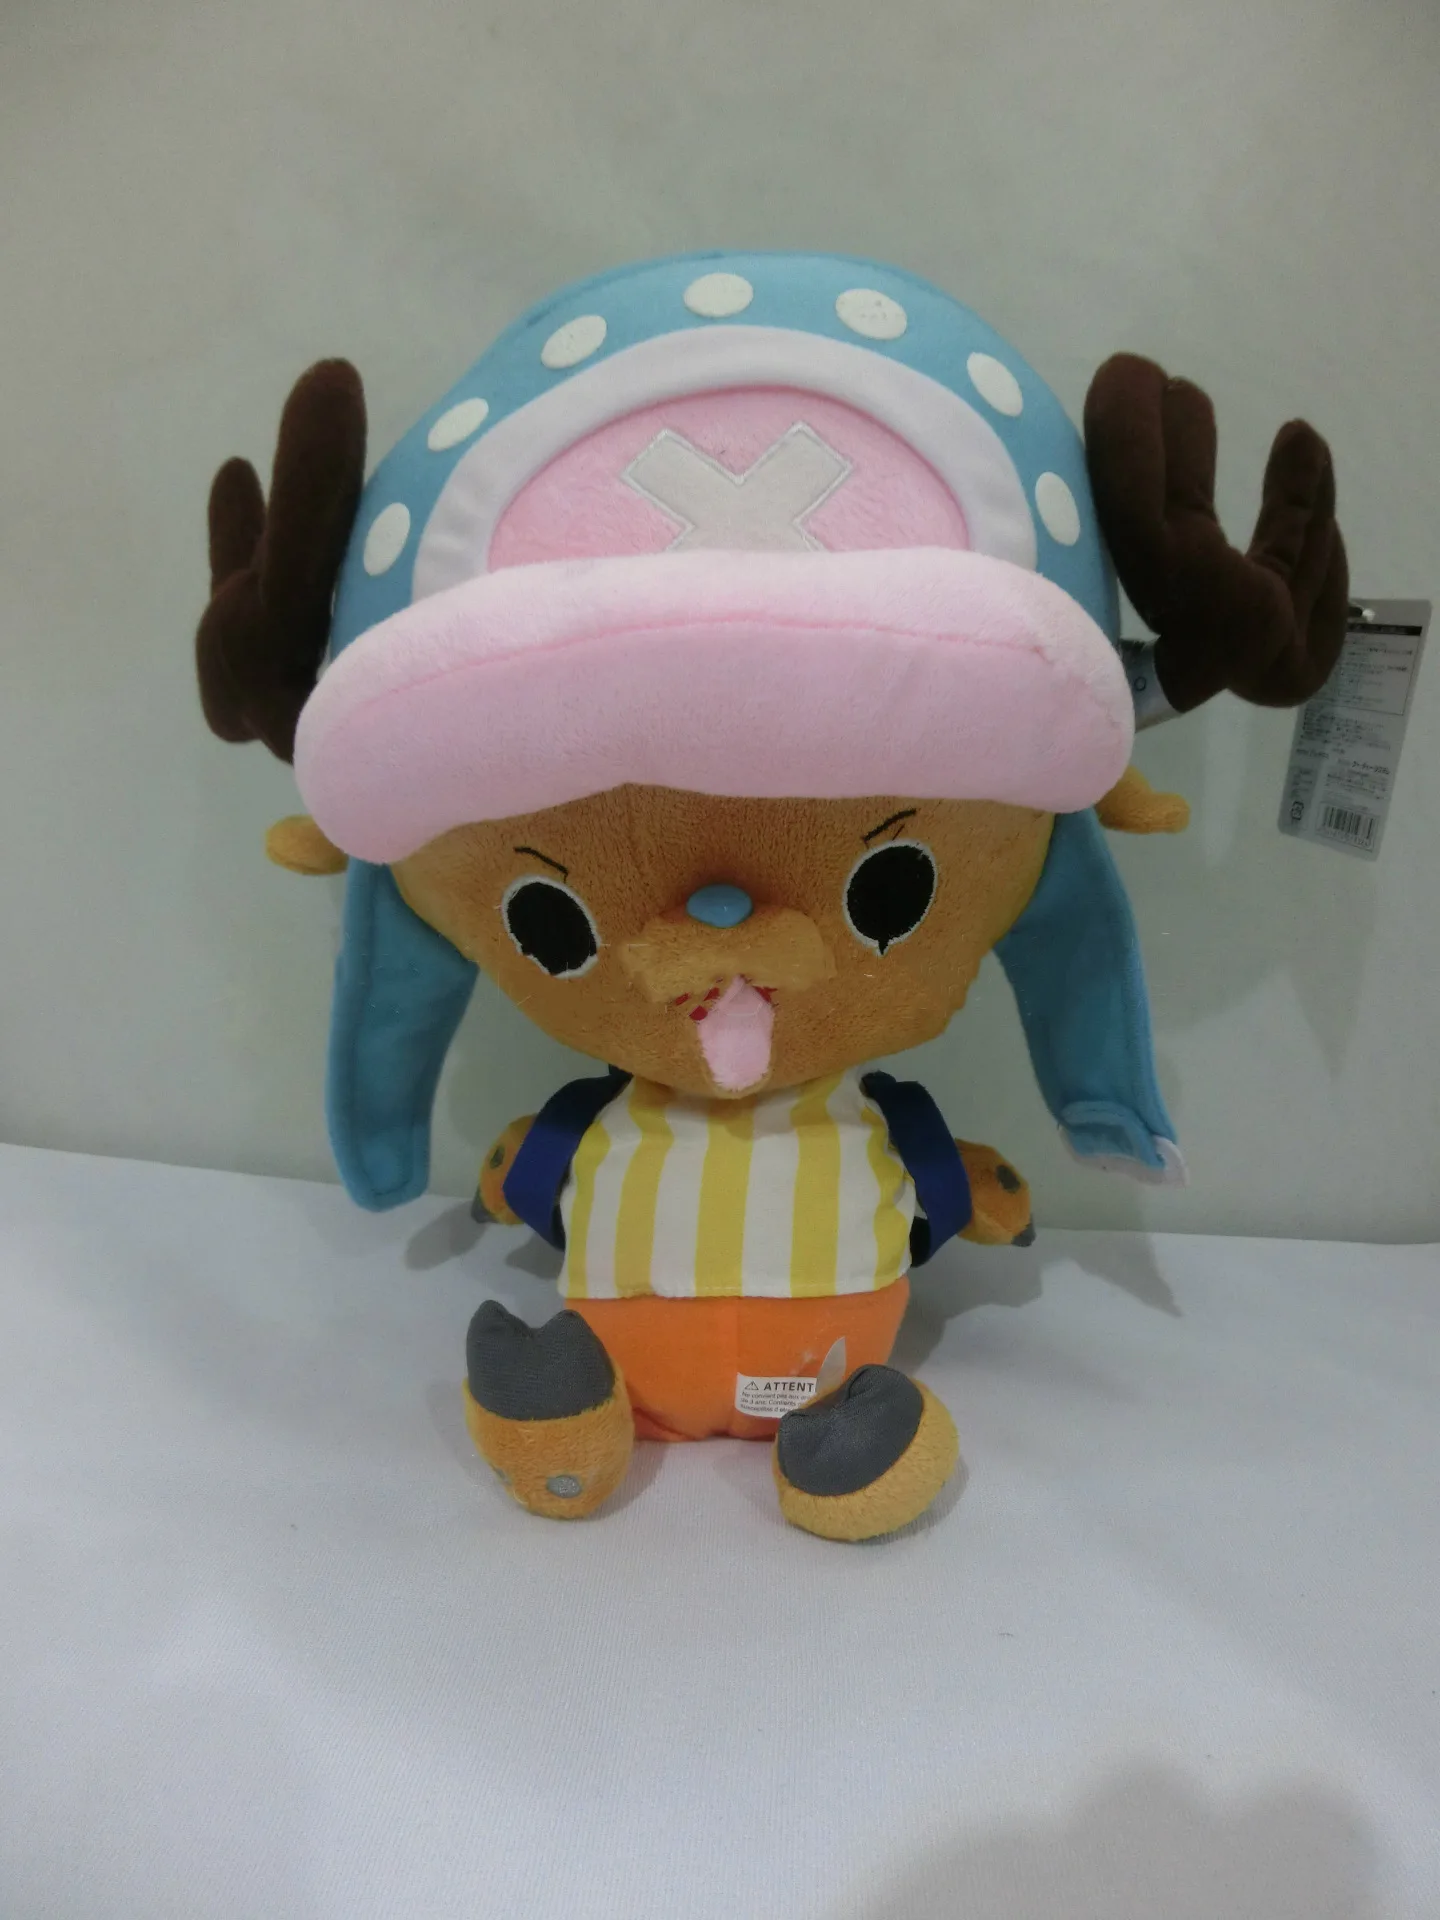 3 вида стилей одна деталь Япония аниме печатных Тони чоппера плюшевая Kawaii подушка мягкая высокого качества подарок для ребенка Kawaii игрушка